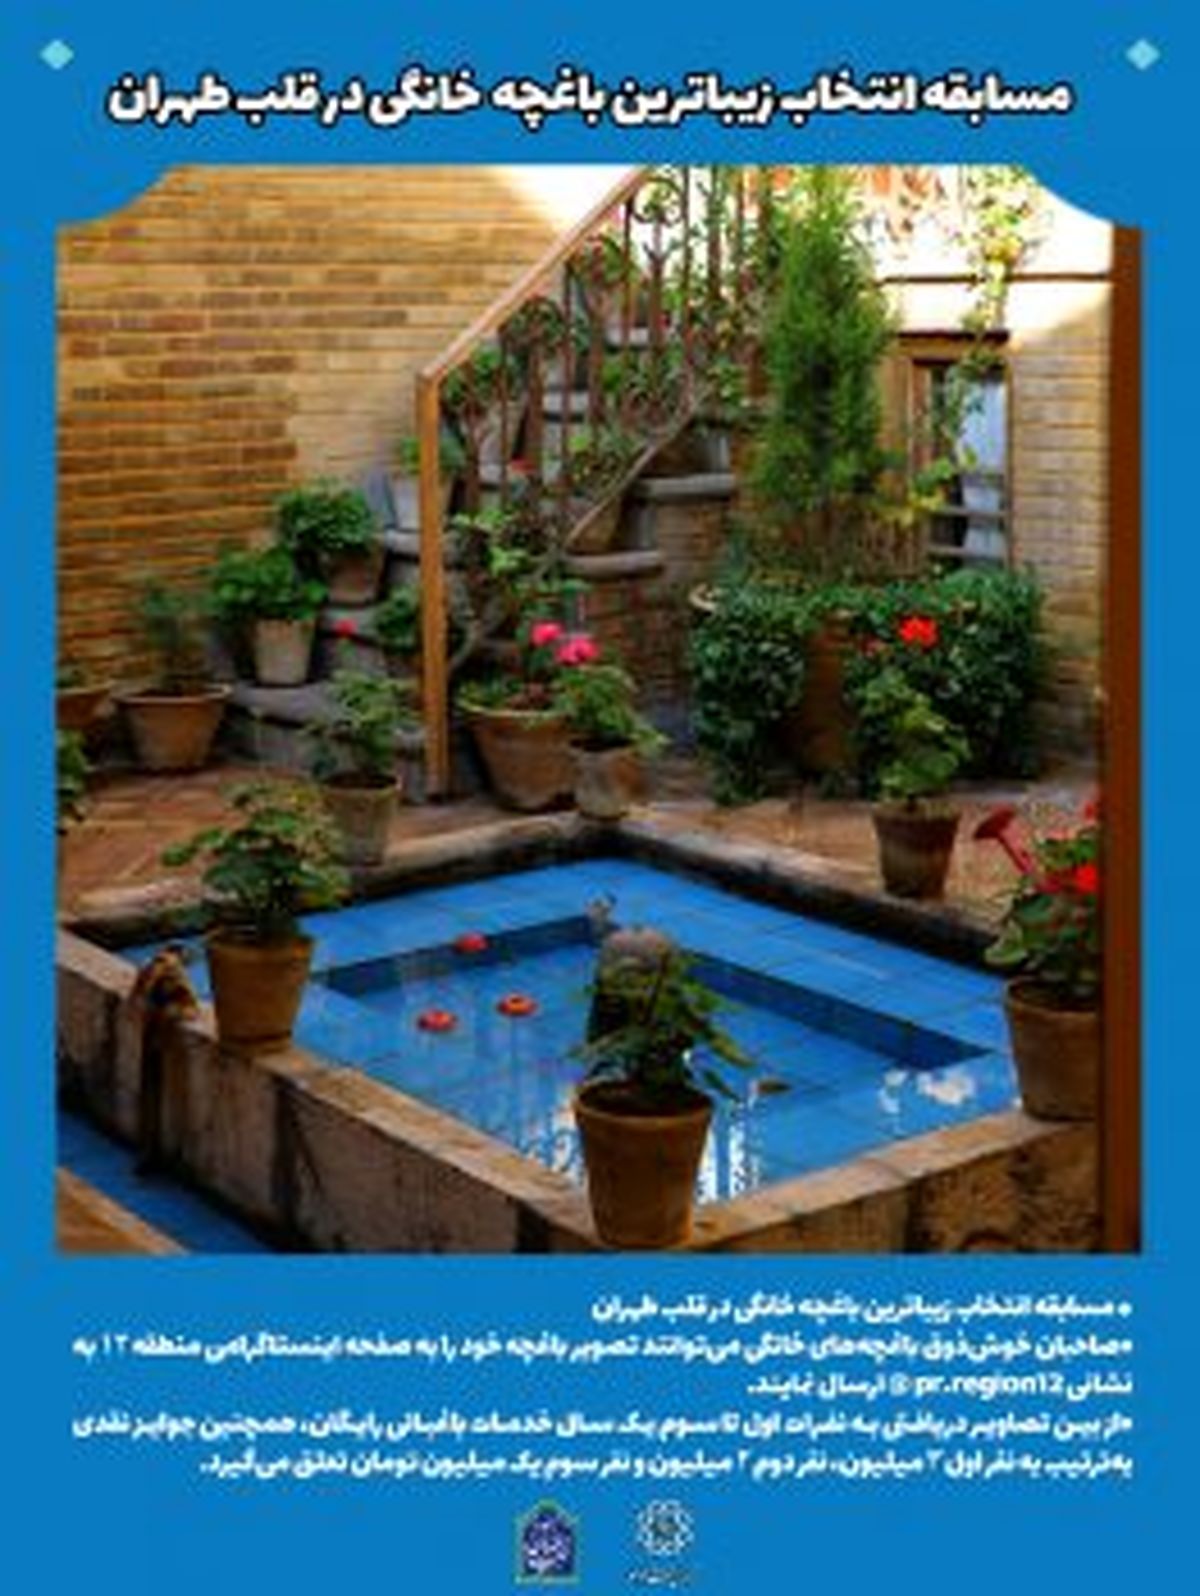 مسابقه انتخاب زیباترین باغچه خانگی در قلب طهران